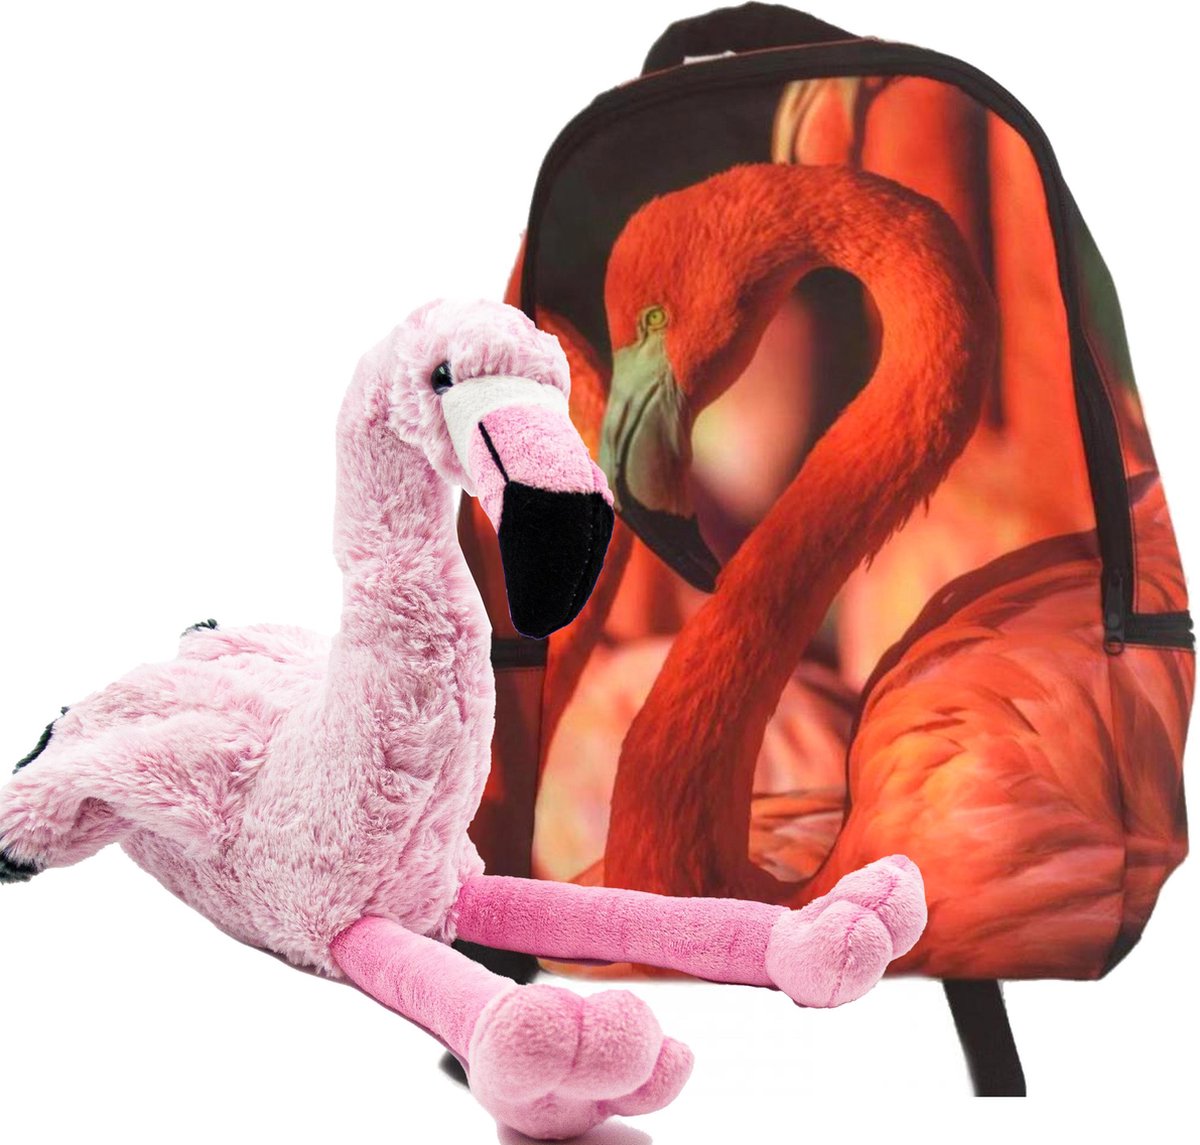 Rugtas flamingo, grote flamingo knuffel pluche set, 35 cm, rugzak school, rugzak flamingo